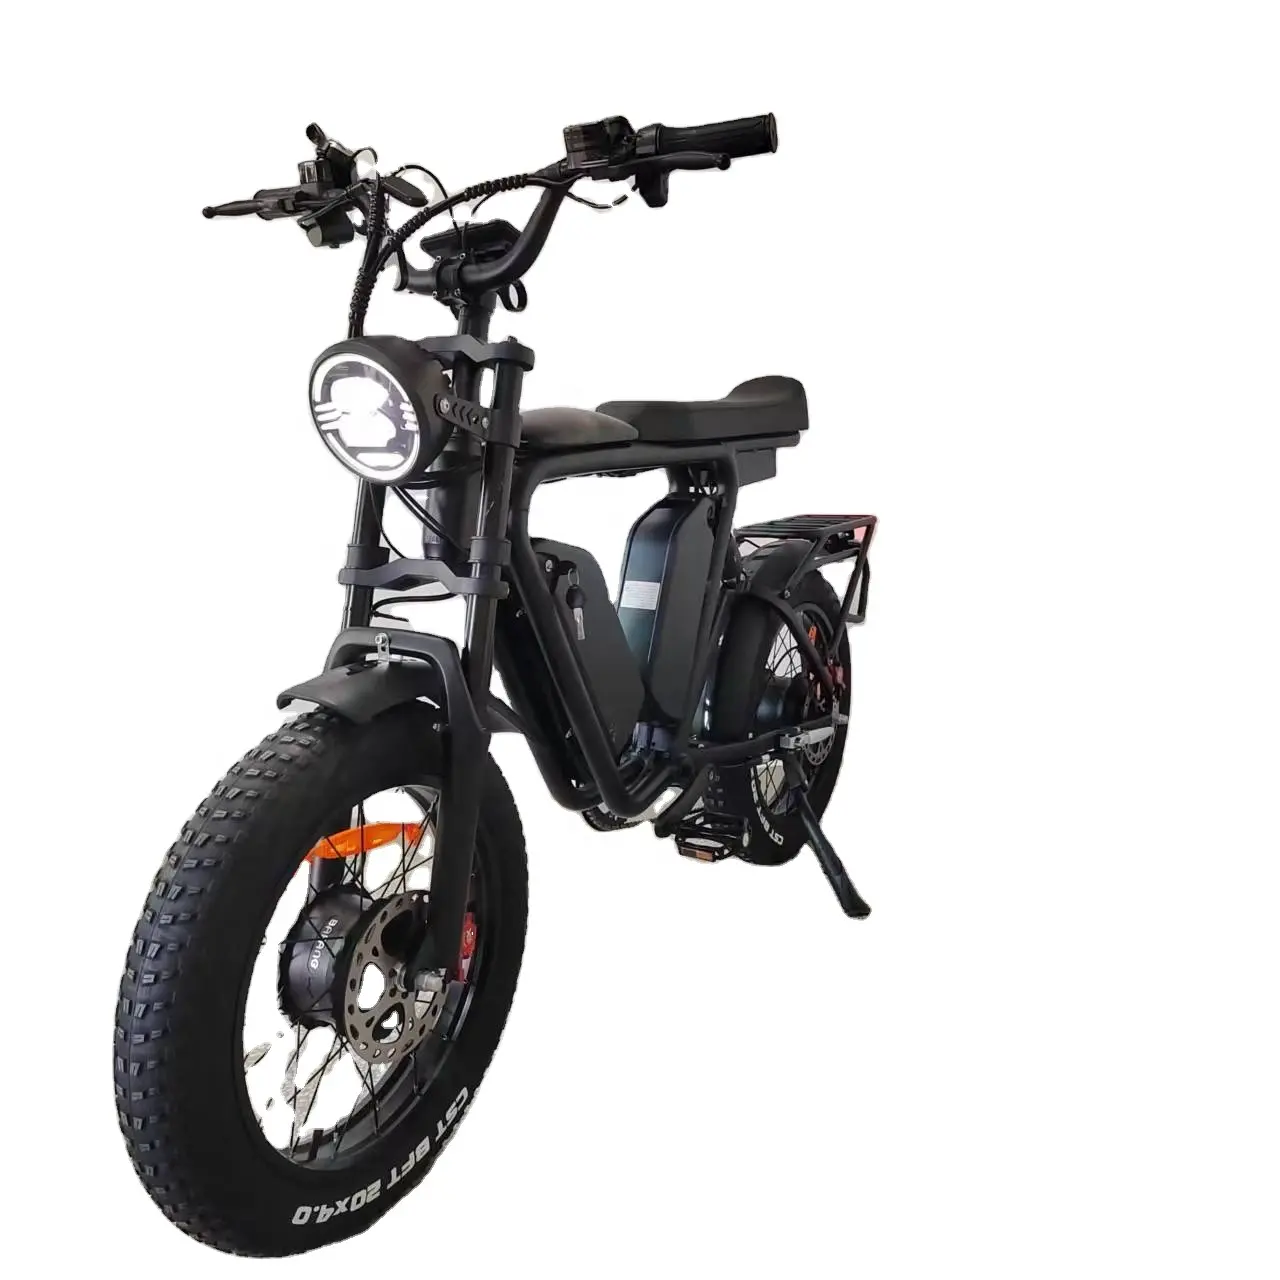 Ebike bafang – double moteur coréen, double batterie 44ah, frein à huile, Suspension complète, siège Long, gros pneu, vélo électrique rapide